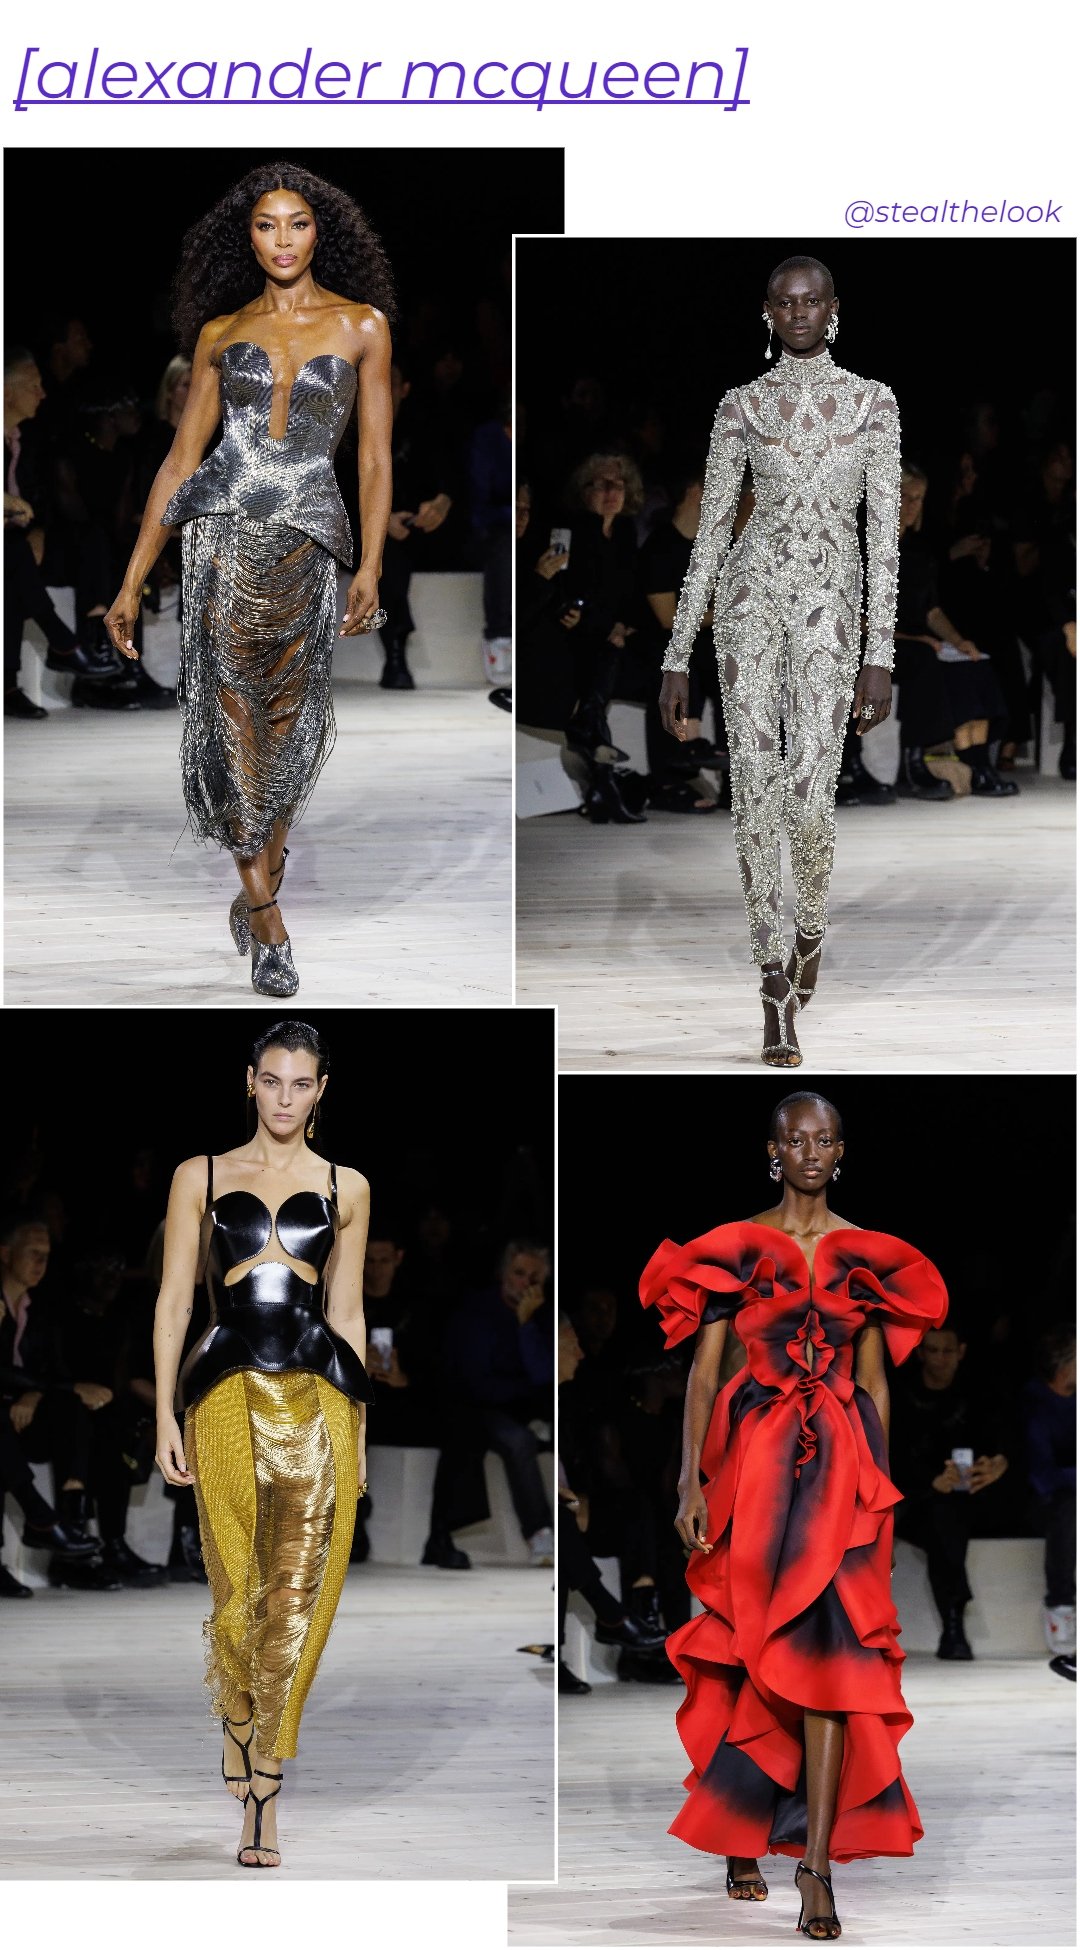 Alexander McQueen - roupas diversas - Paris Fashion Week - verão - colagem de imagens - https://stealthelook.com.br